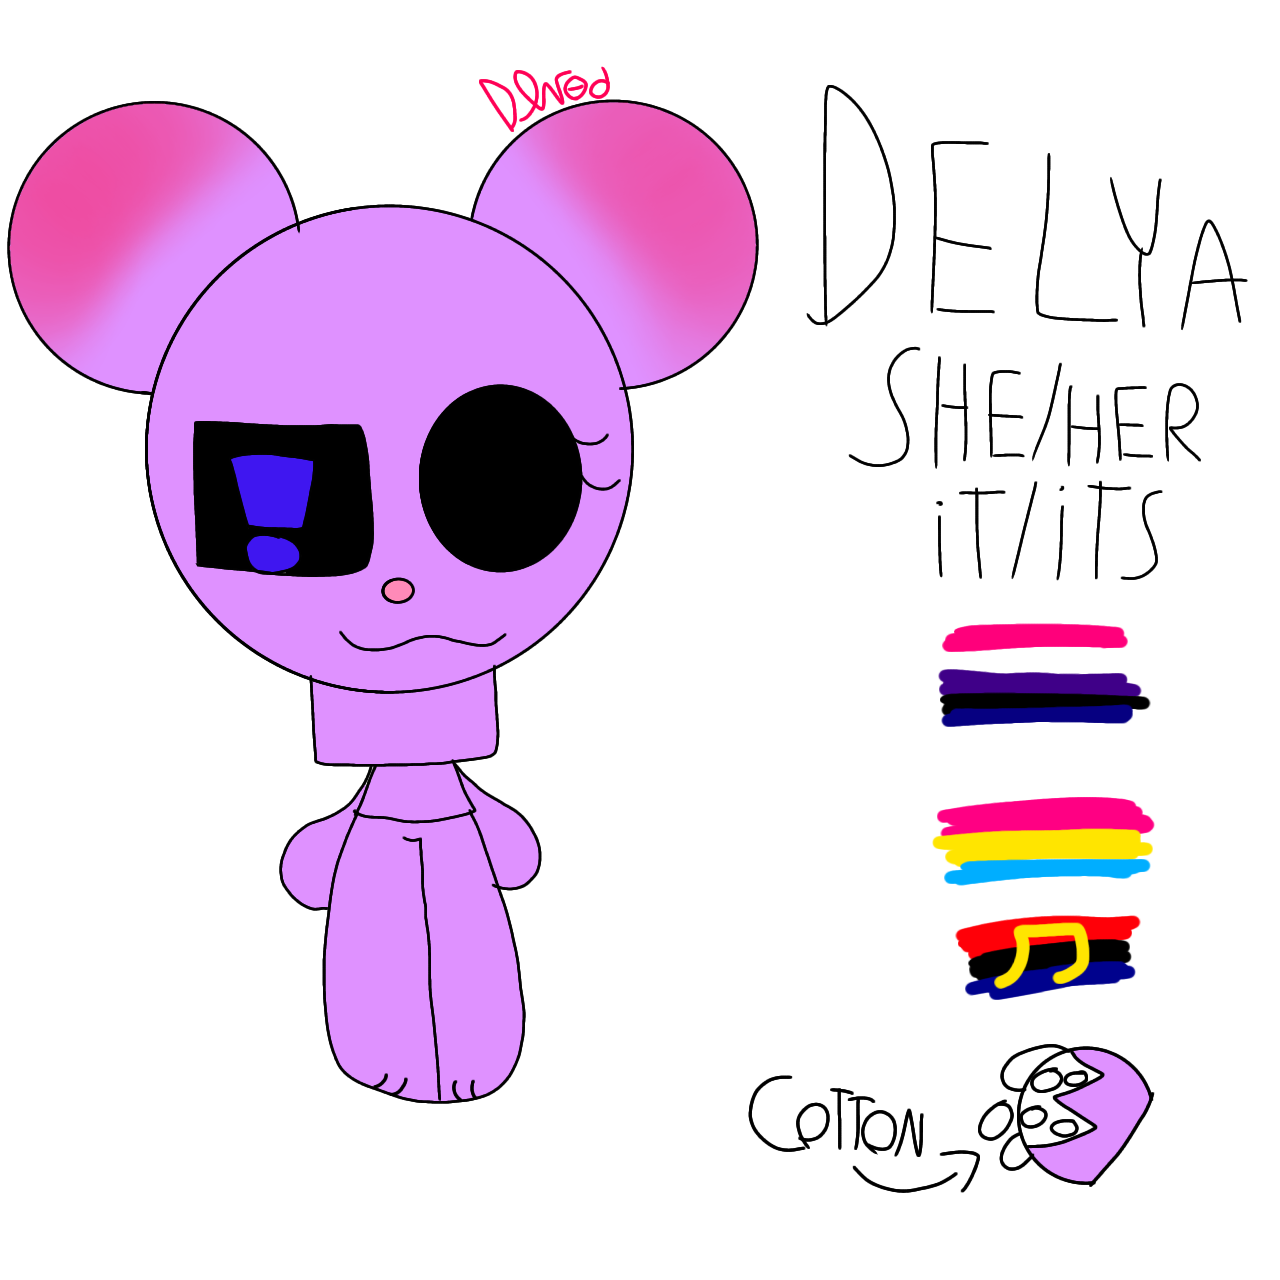 Delya(Bear alpha roblox oc) by DEVODLEAF on DeviantArt